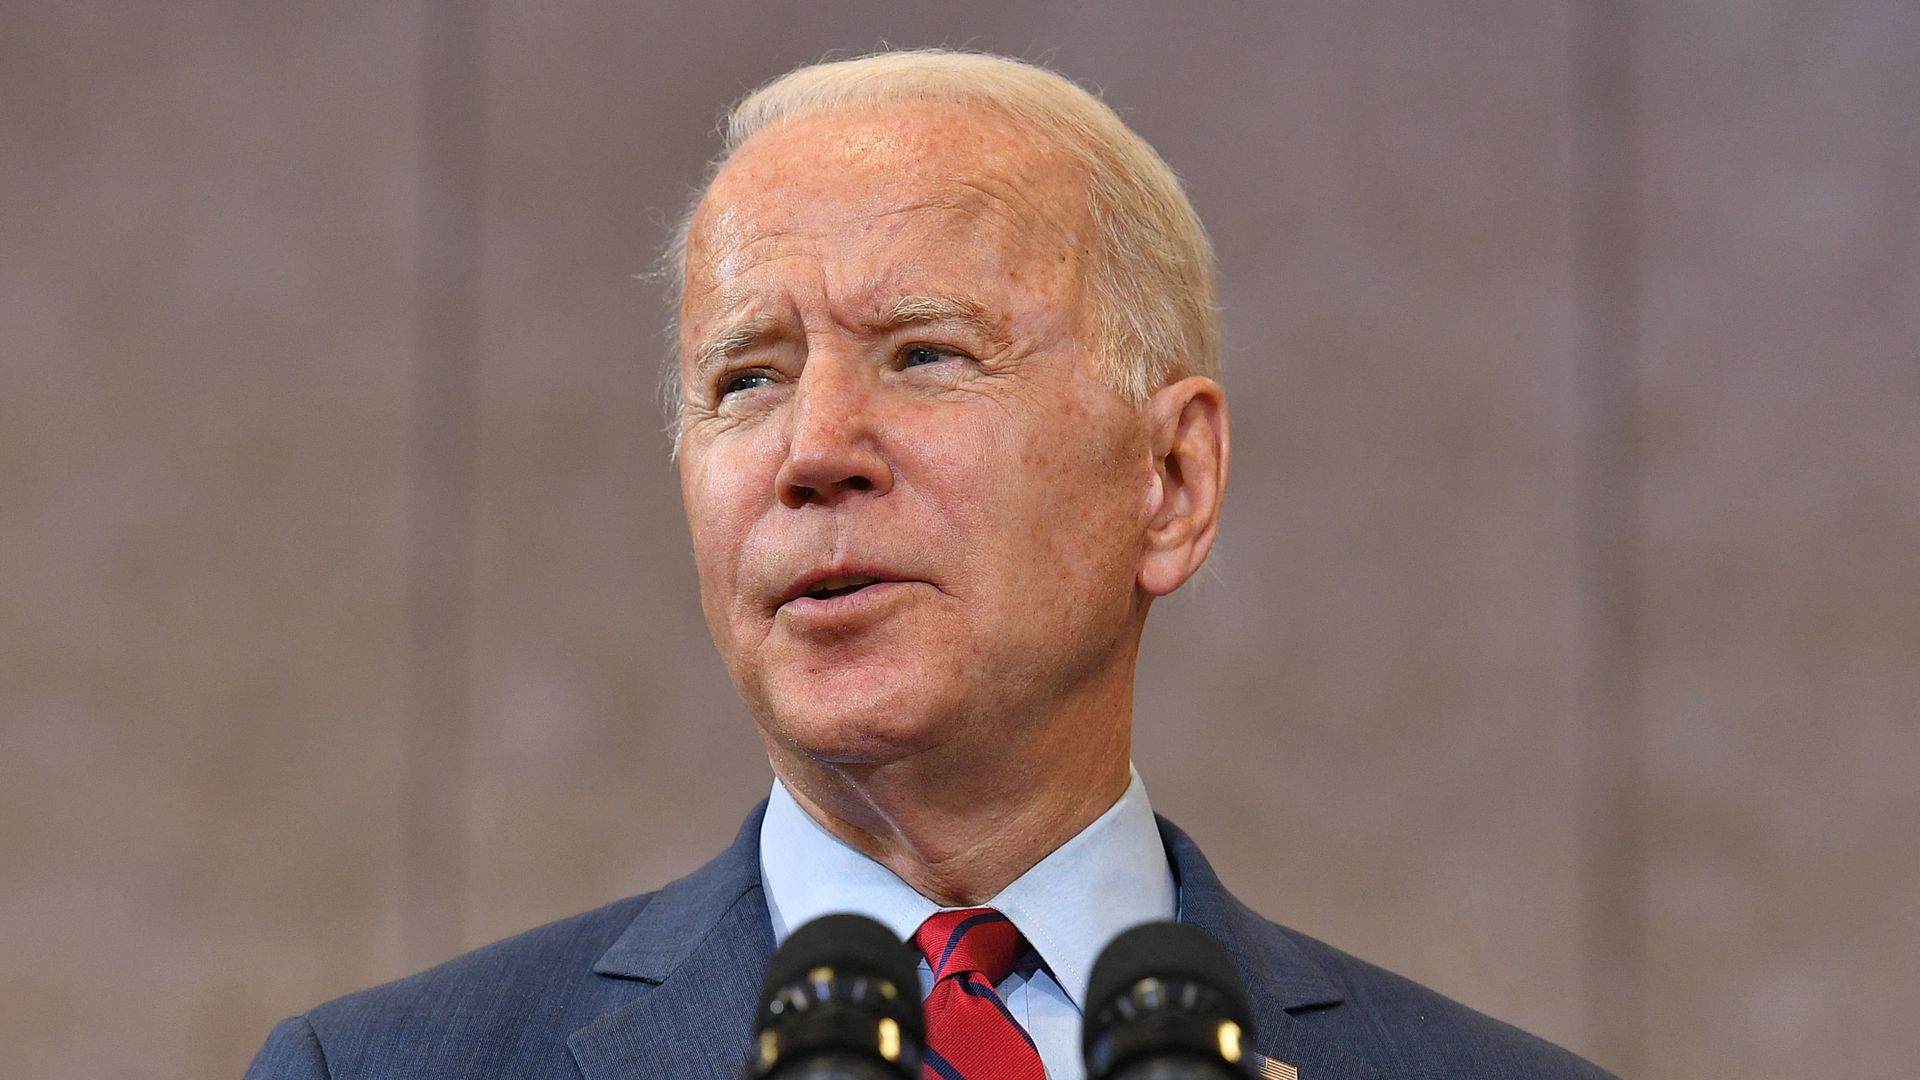 Photo of Joe Biden from the shoulders up speaking into microphones